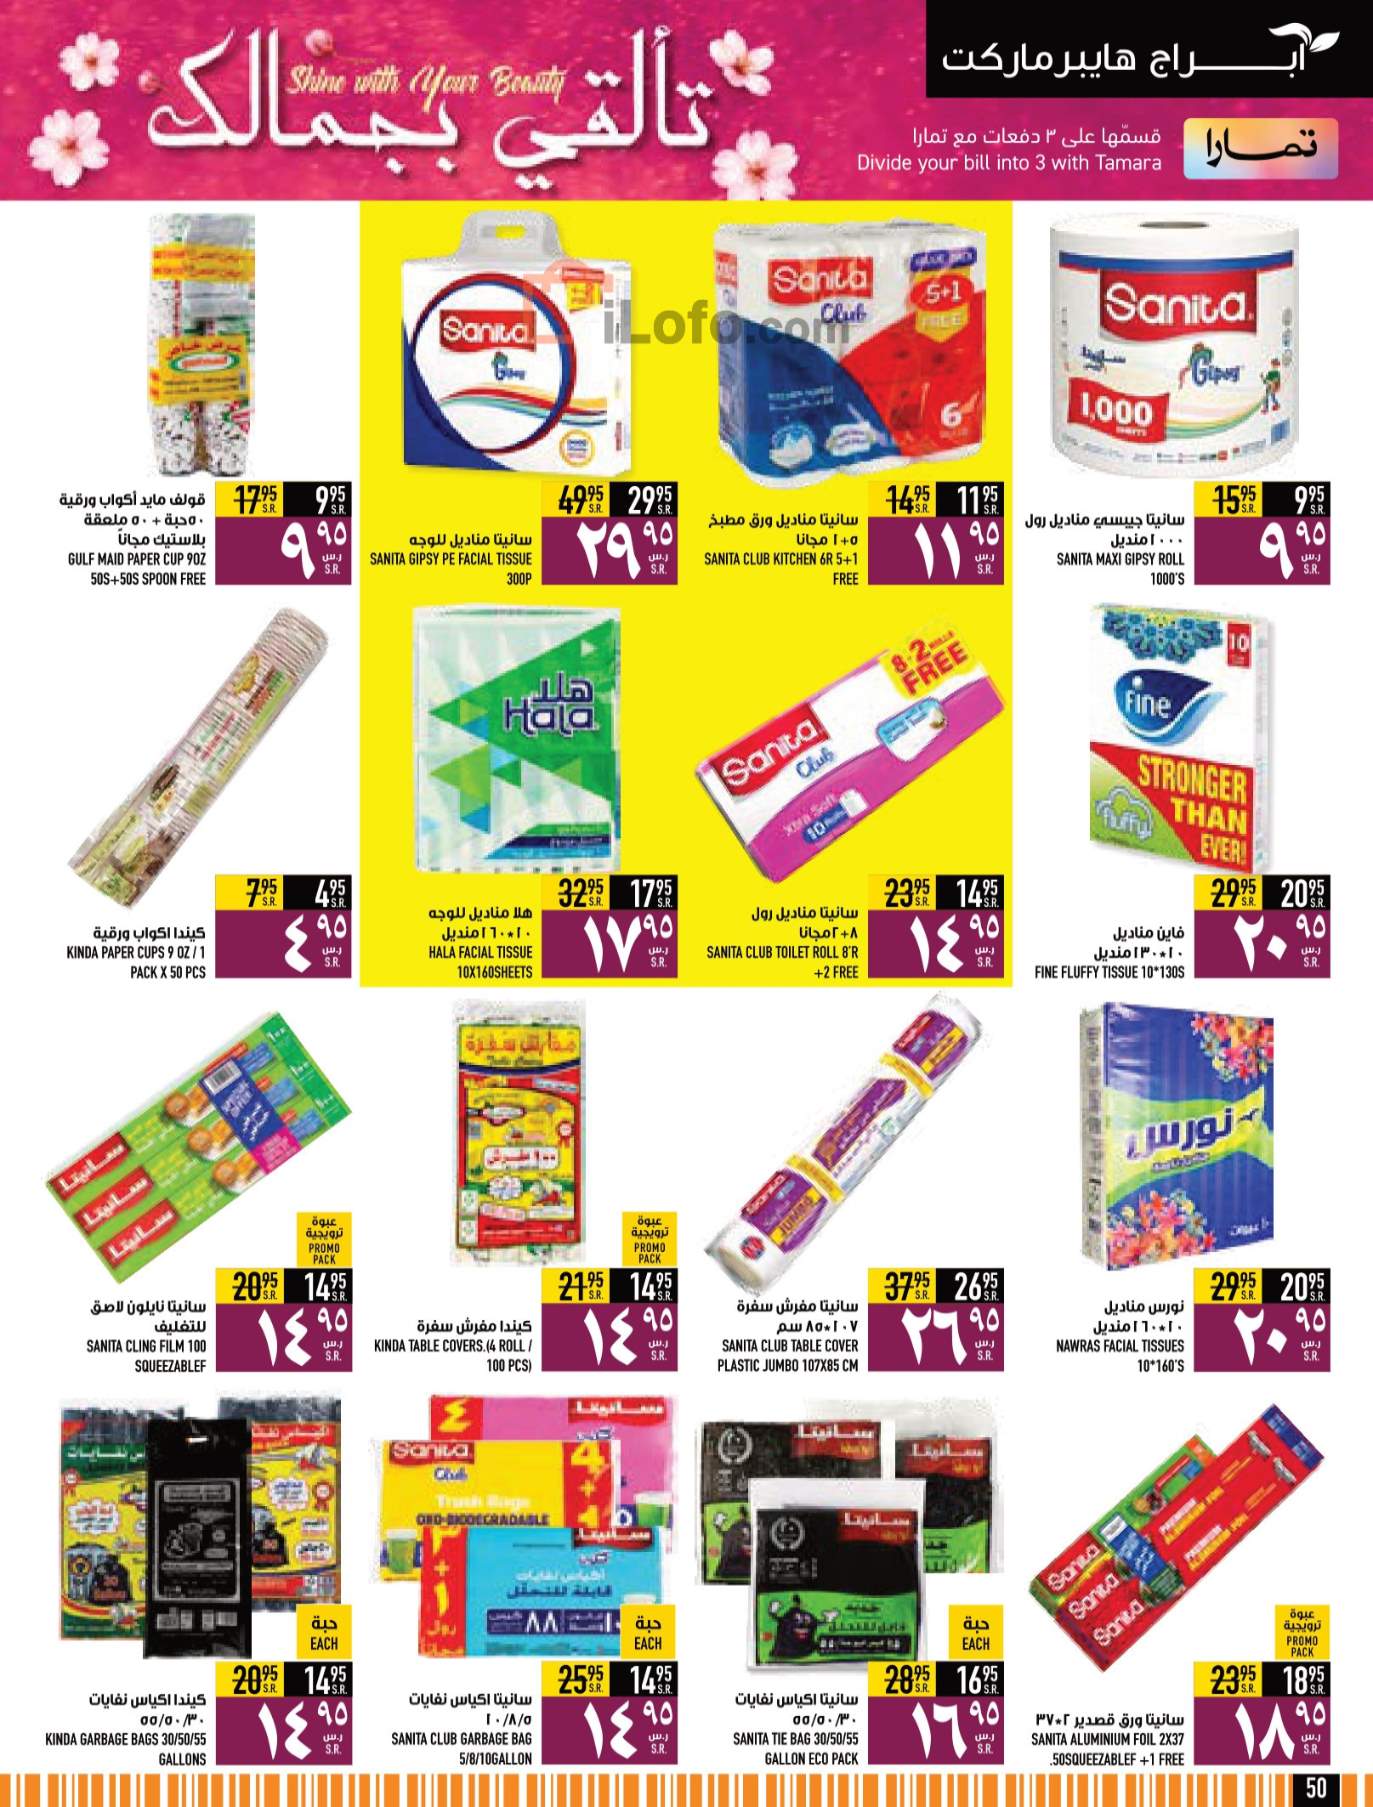 Page 50 at Saving week at Abraj Hypermarket KSA